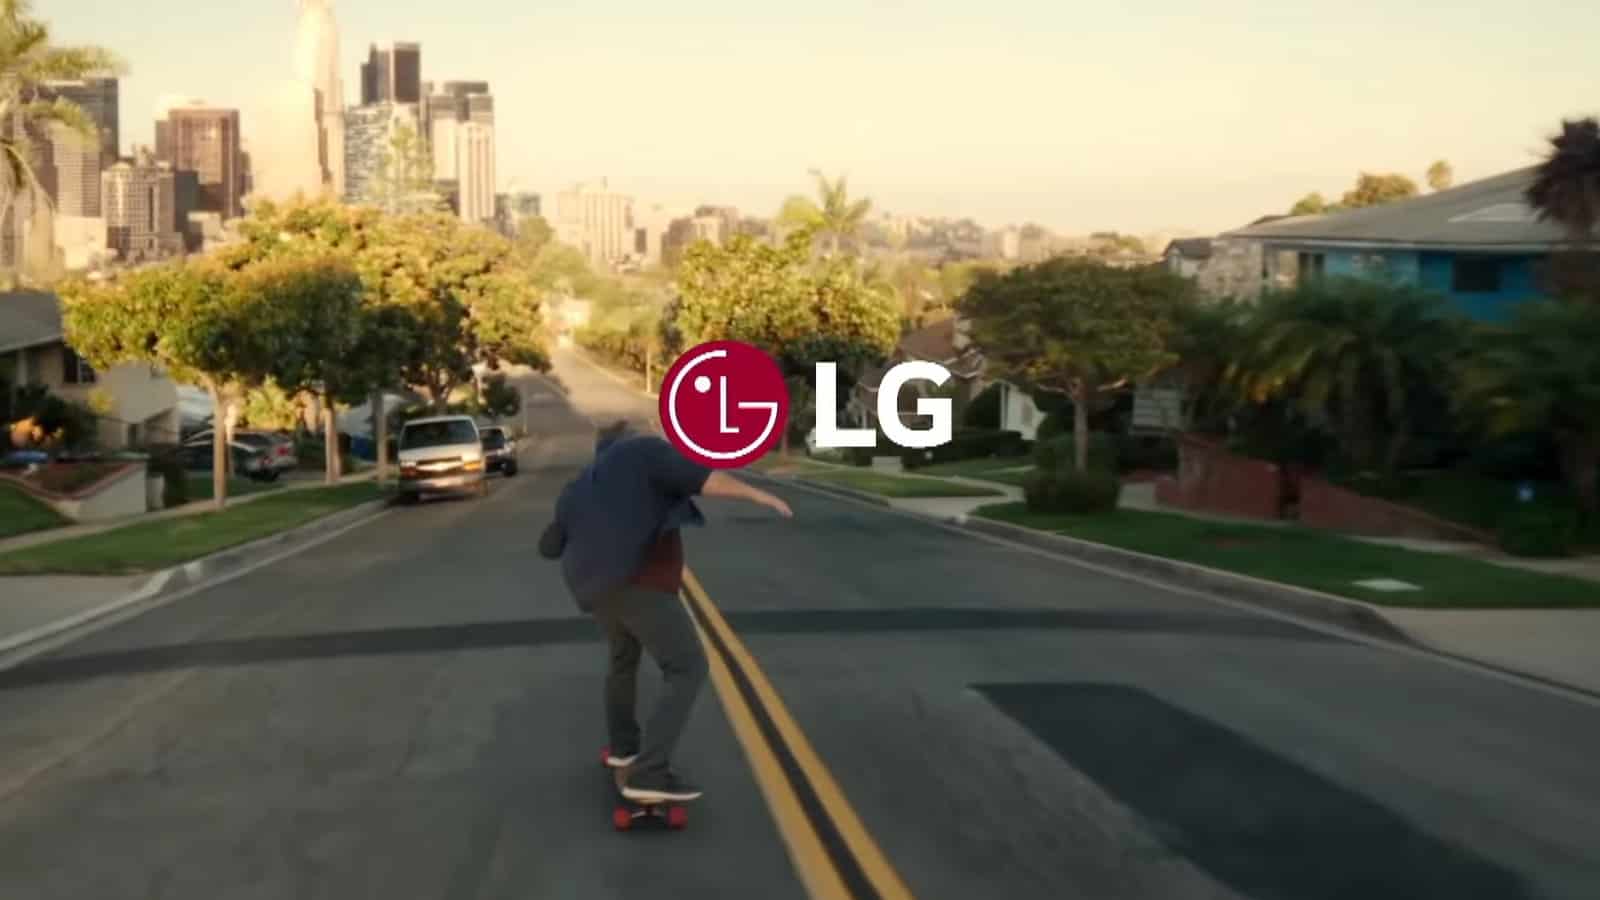 LG confirma el lanzamiento de un dispositivo XR el próximo año